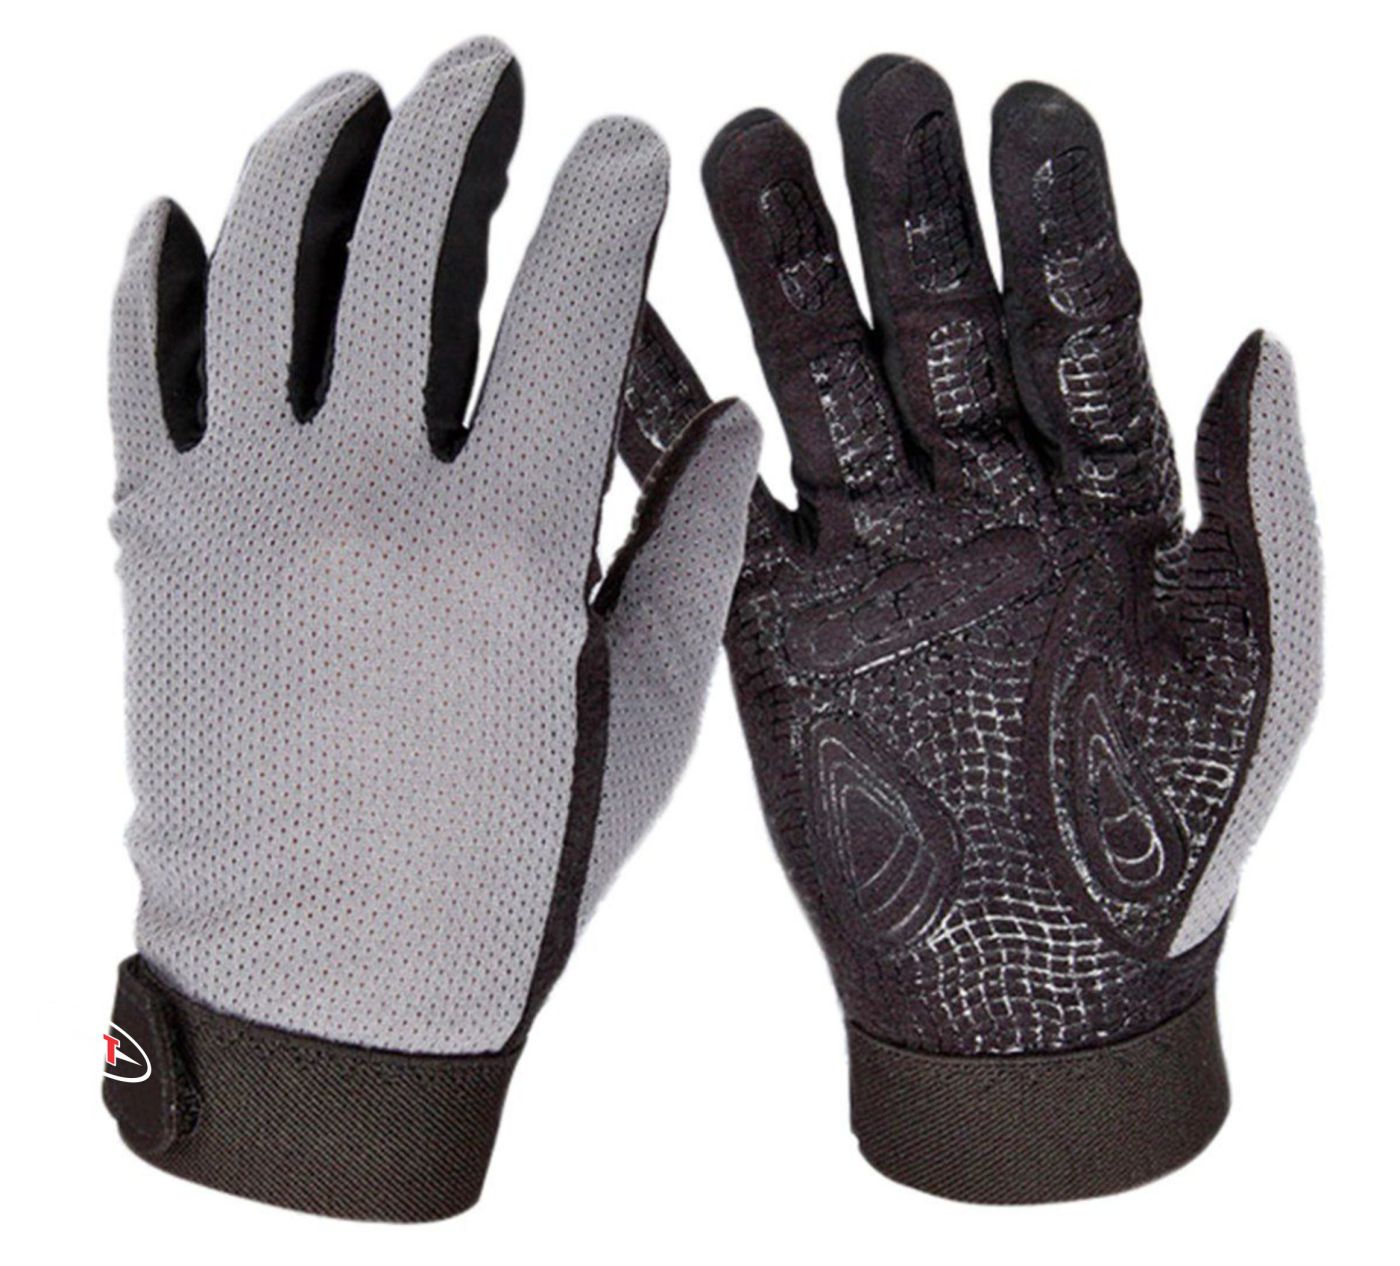 Crossfit Full finger Gloves - ACS-1566